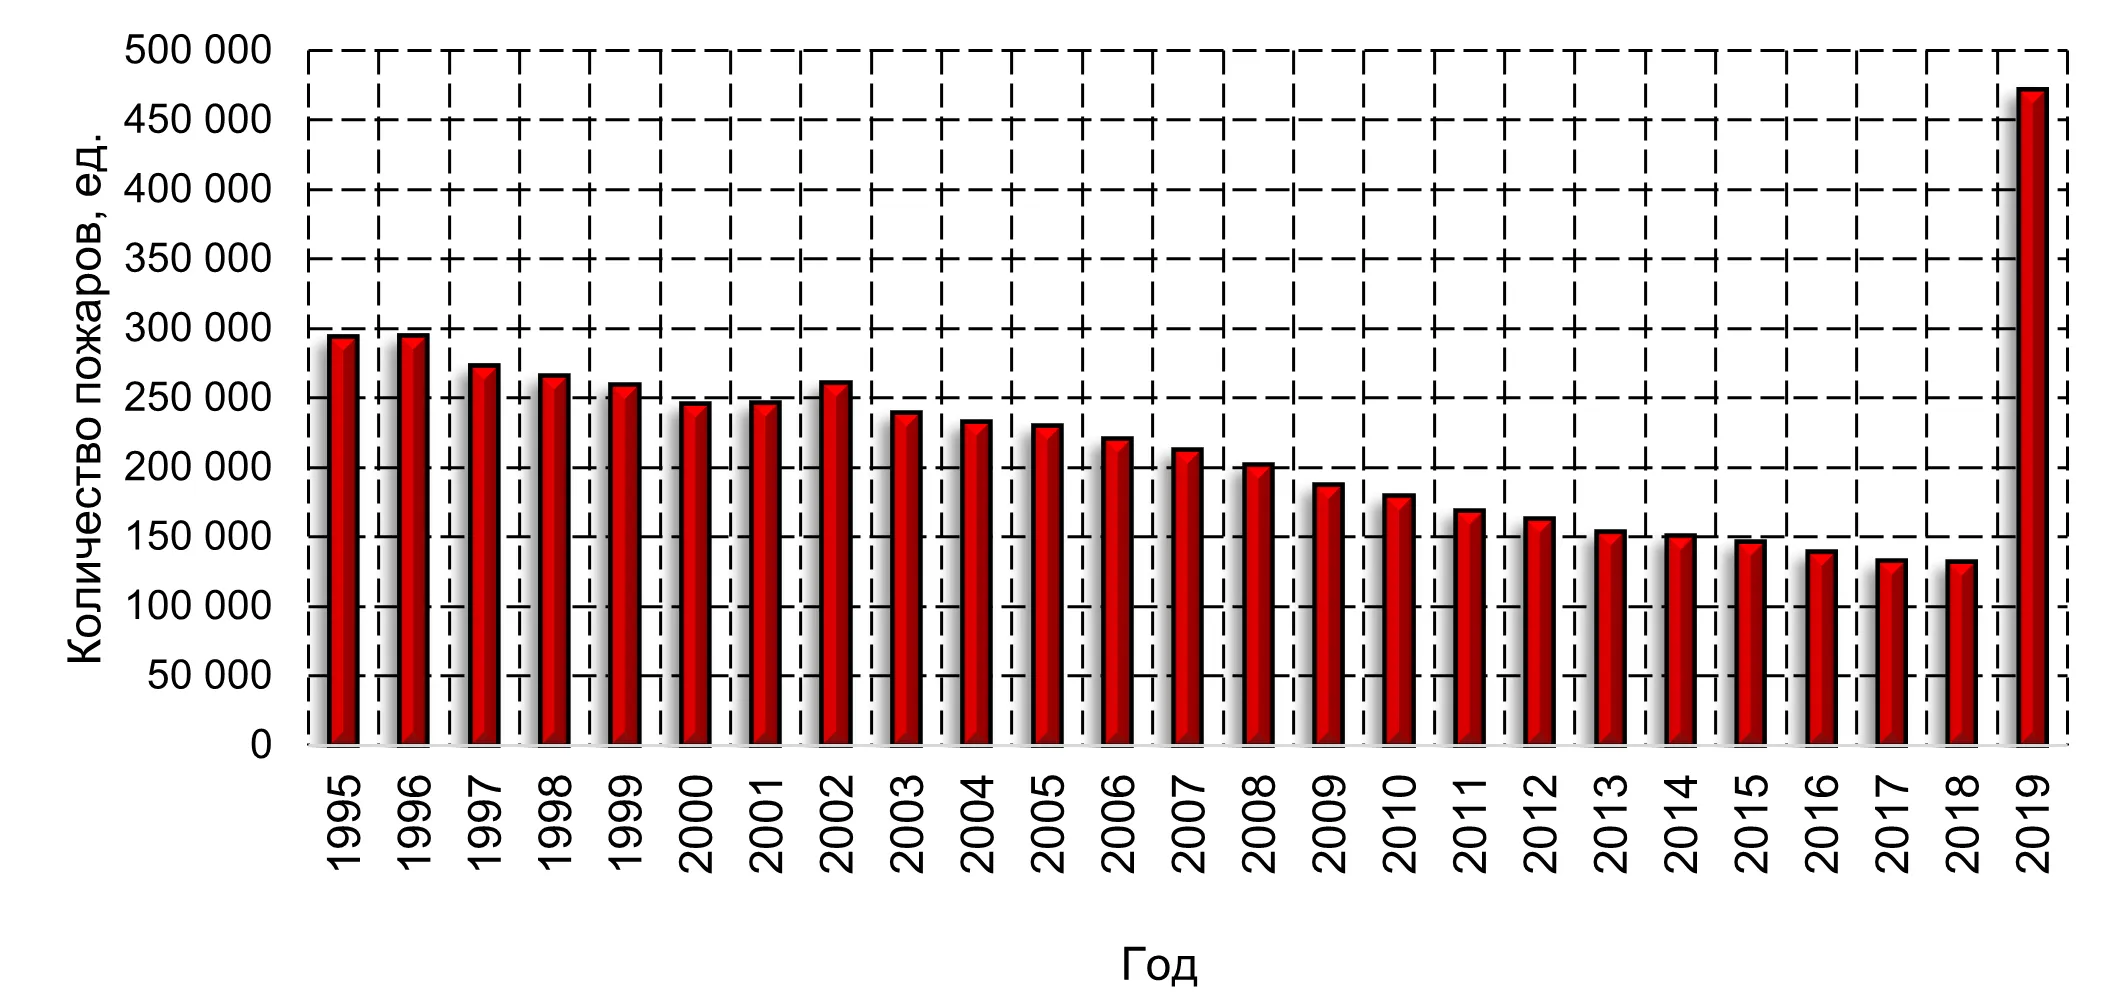 Гистограмма распределения количества пожаров в Российской Федерации с 1995 по 2019 года